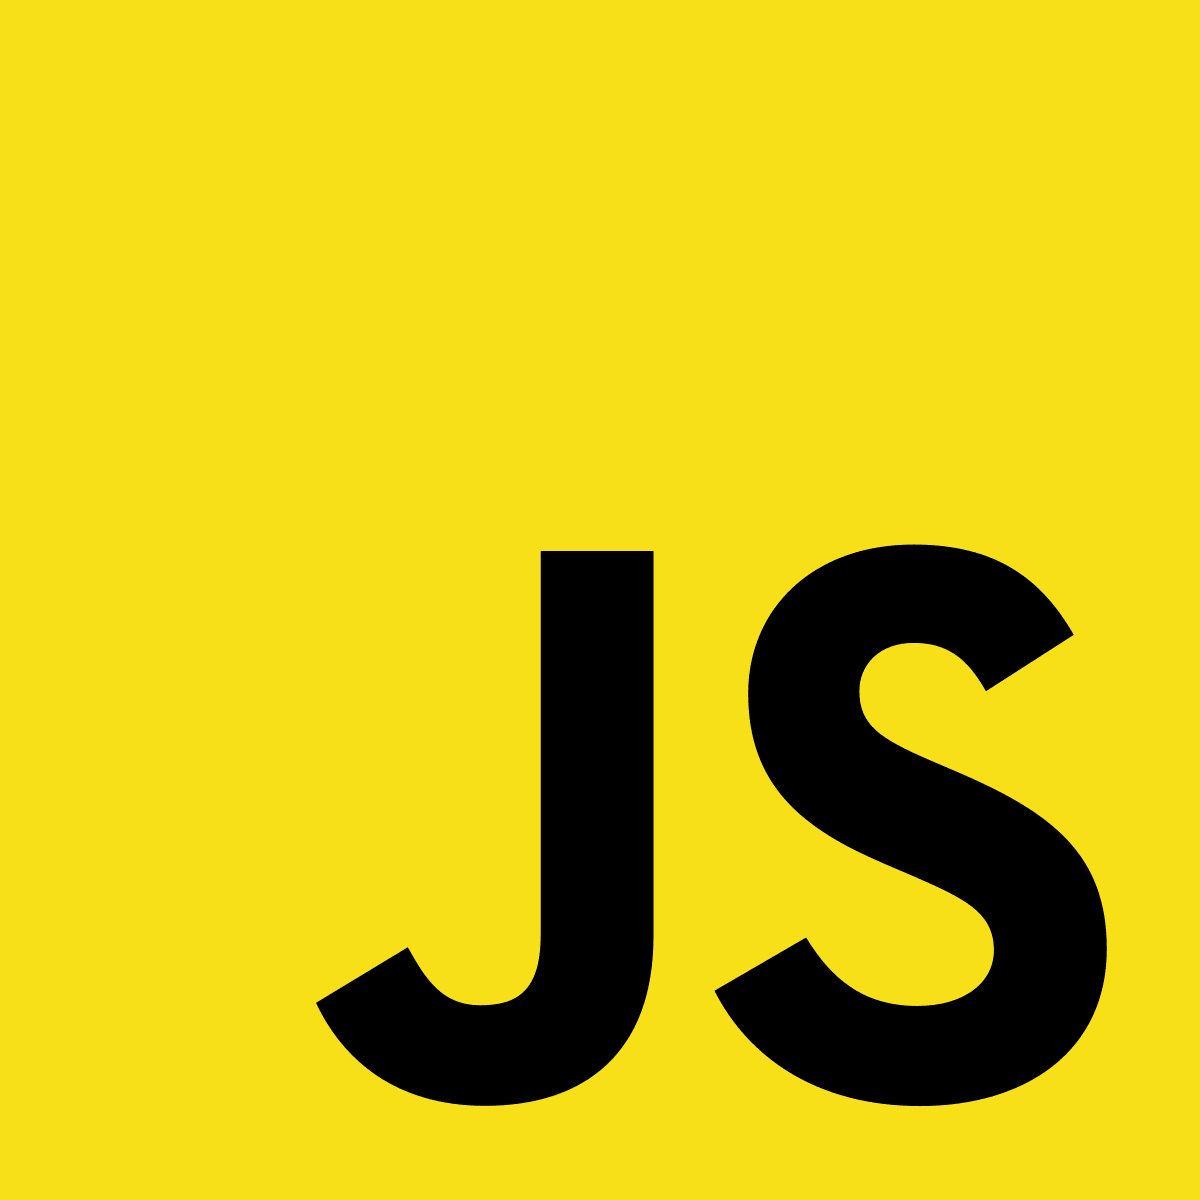 Nous choisissons le langage javascript pour le développement web